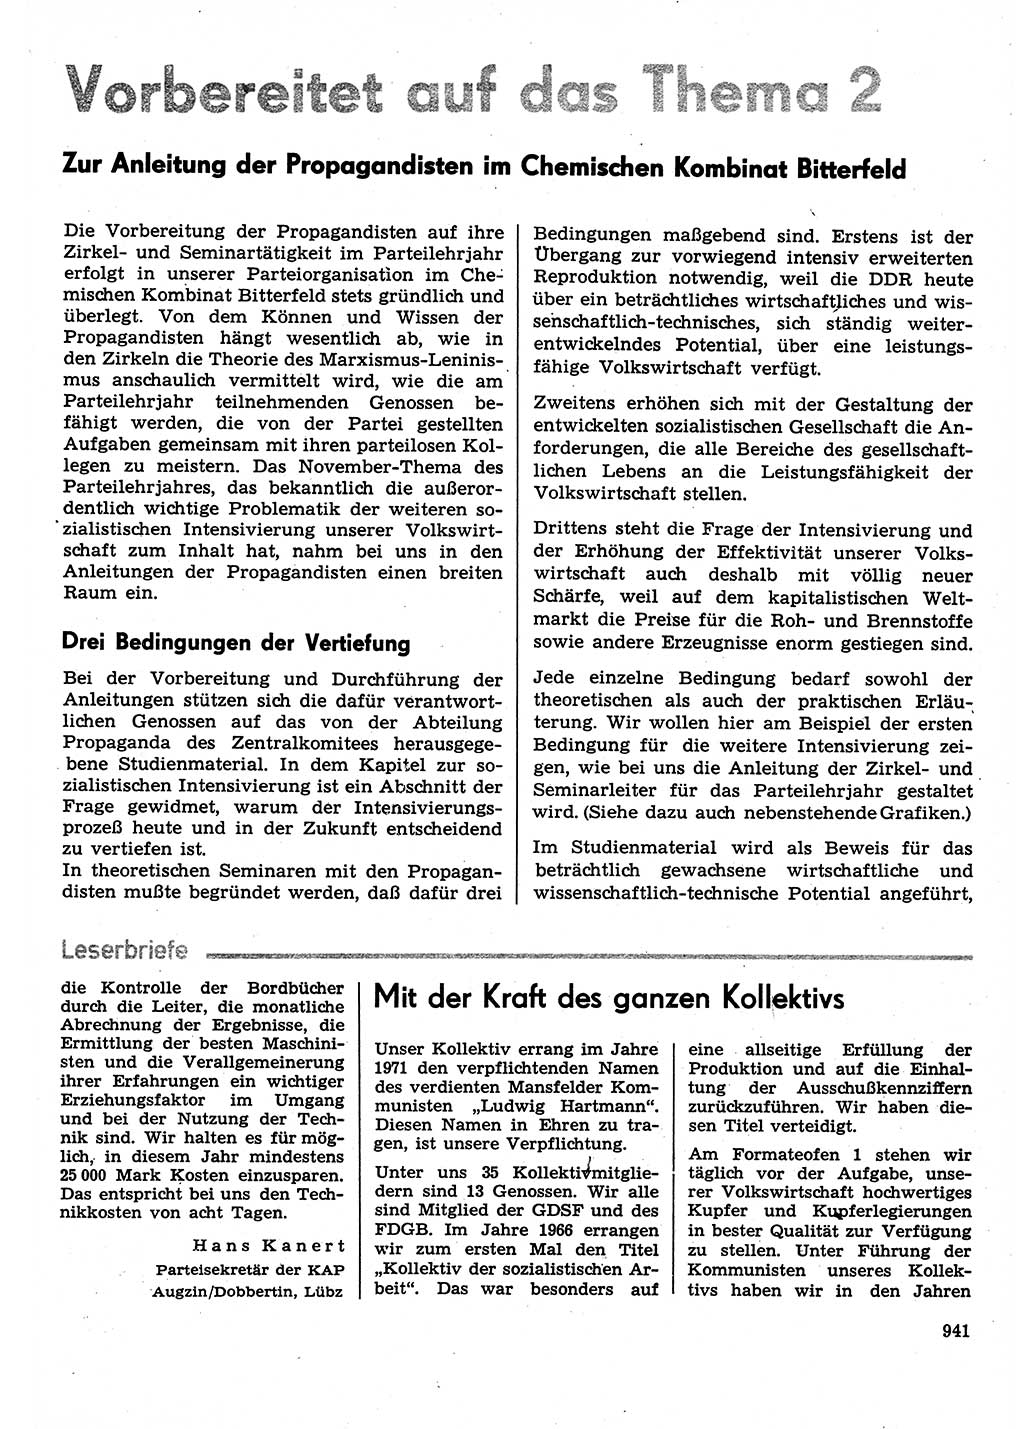 Neuer Weg (NW), Organ des Zentralkomitees (ZK) der SED (Sozialistische Einheitspartei Deutschlands) für Fragen des Parteilebens, 30. Jahrgang [Deutsche Demokratische Republik (DDR)] 1975, Seite 941 (NW ZK SED DDR 1975, S. 941)